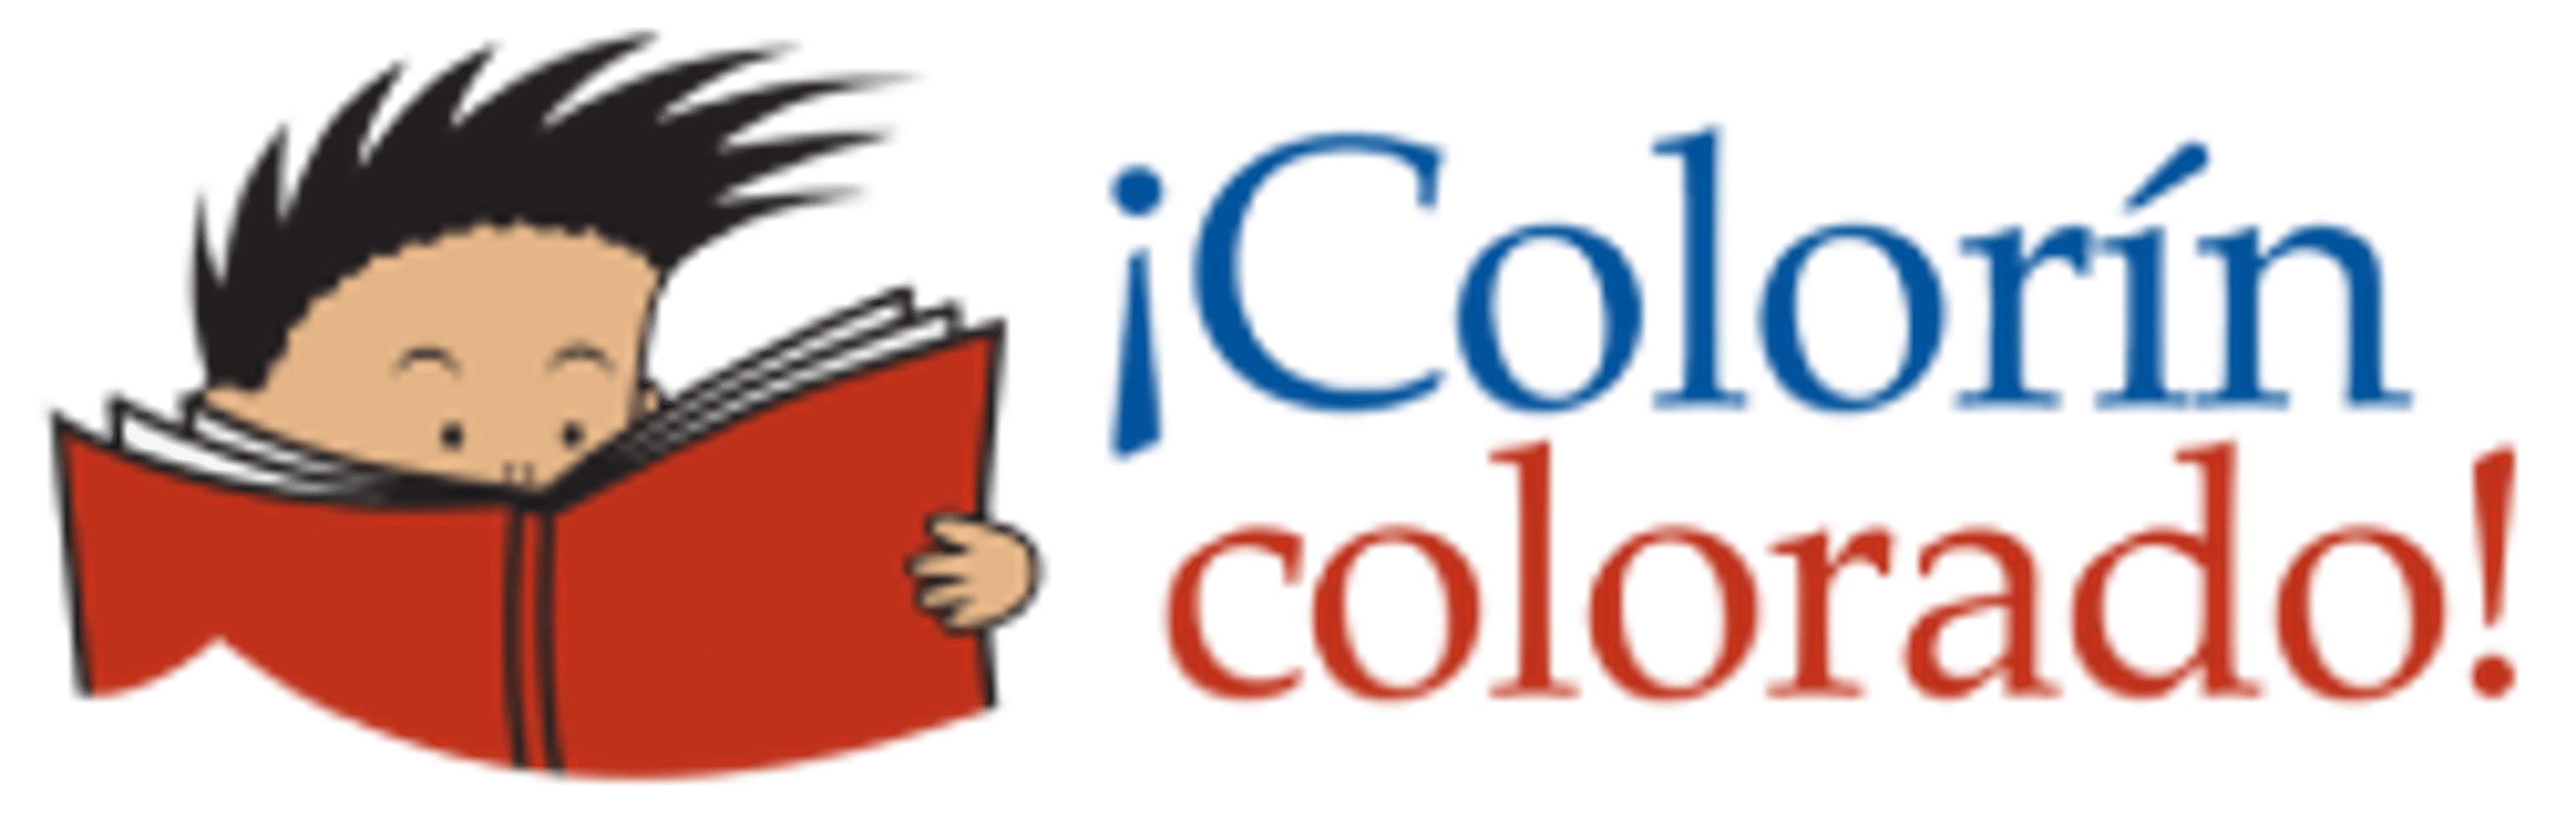 ColorinColorado.org logo